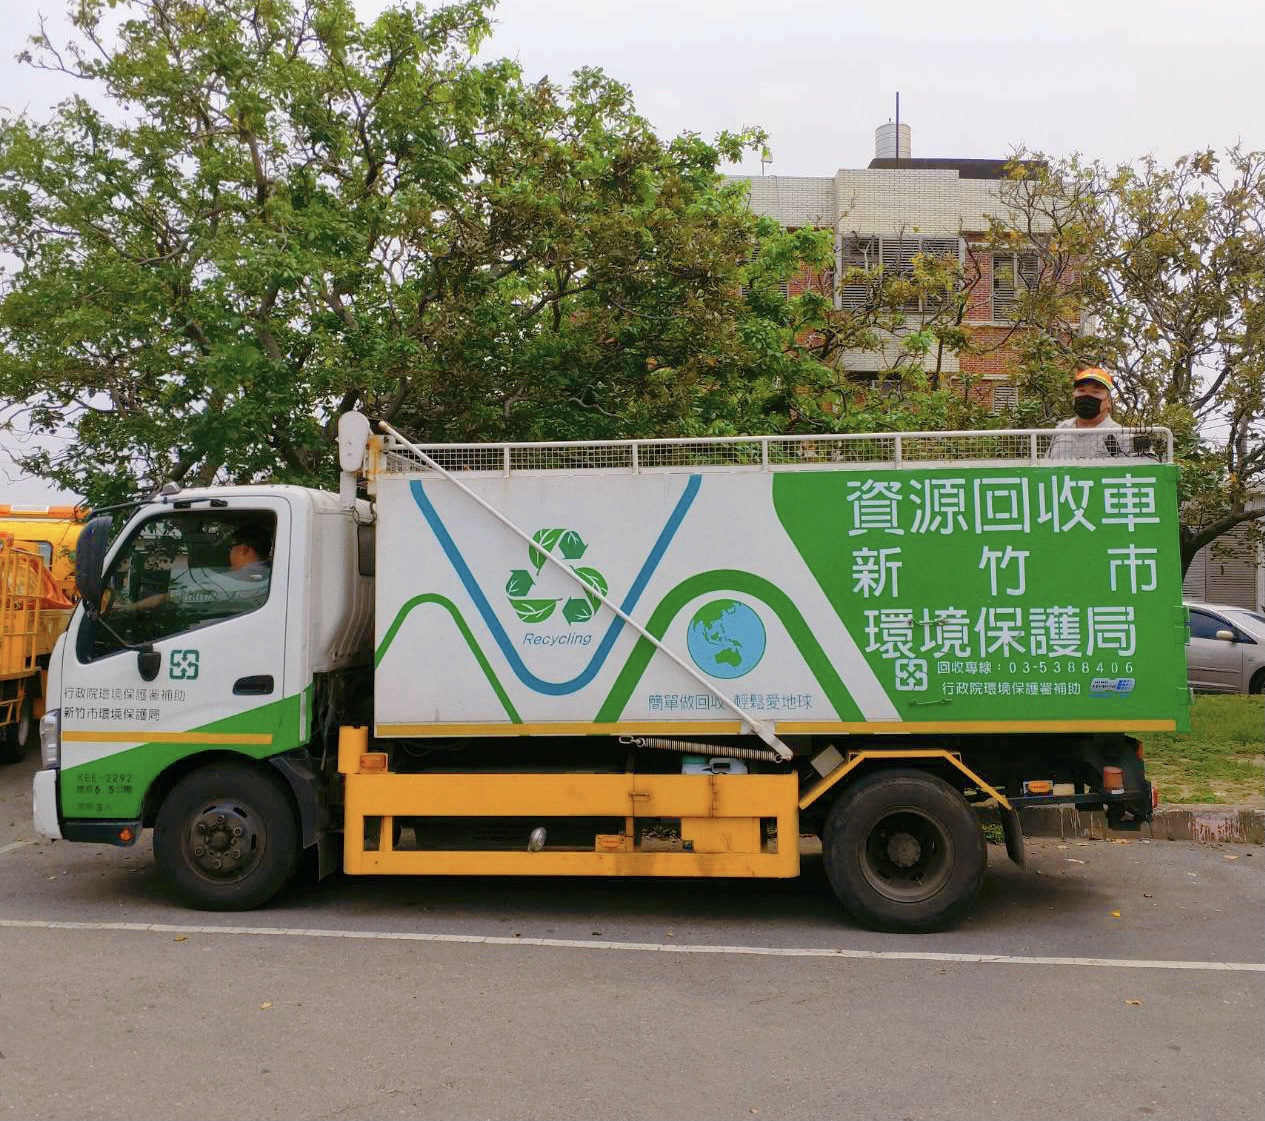 新竹市舊衣回收新增 5處社會福利機構 愛心助人做環保大圖